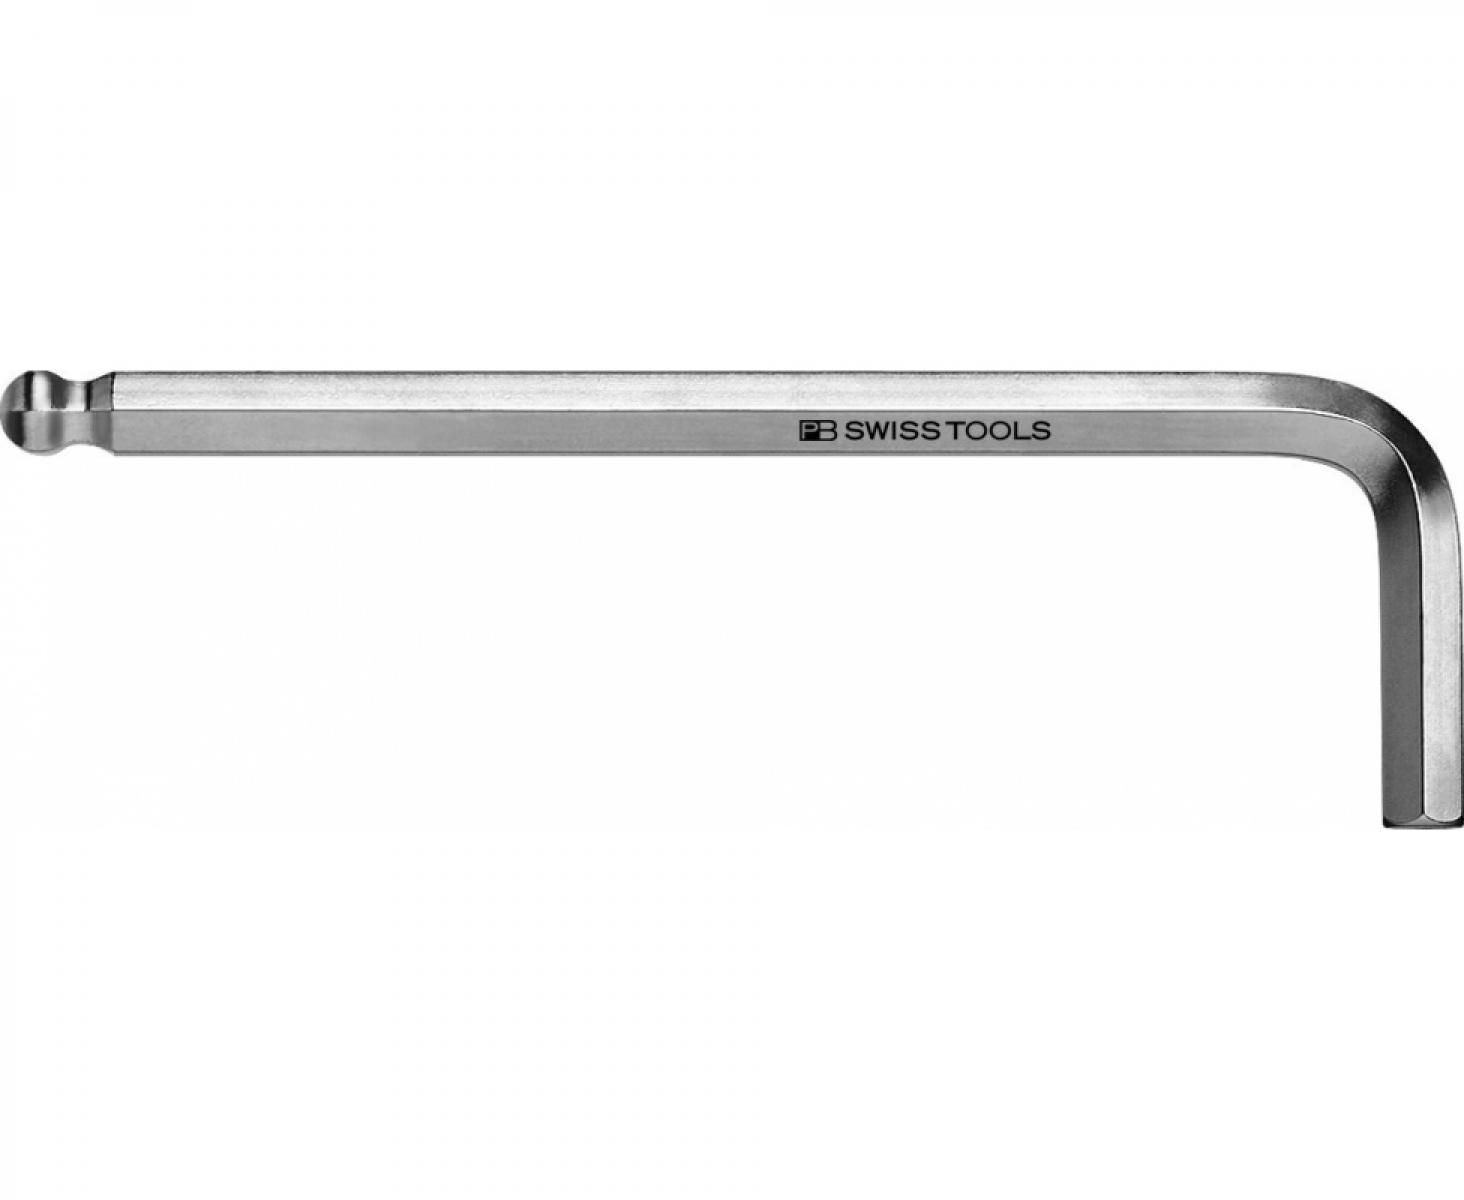 Ключ штифтовый HEX PB Swiss Tools PB 212Z.3/16 со сферической головкой дюймовый